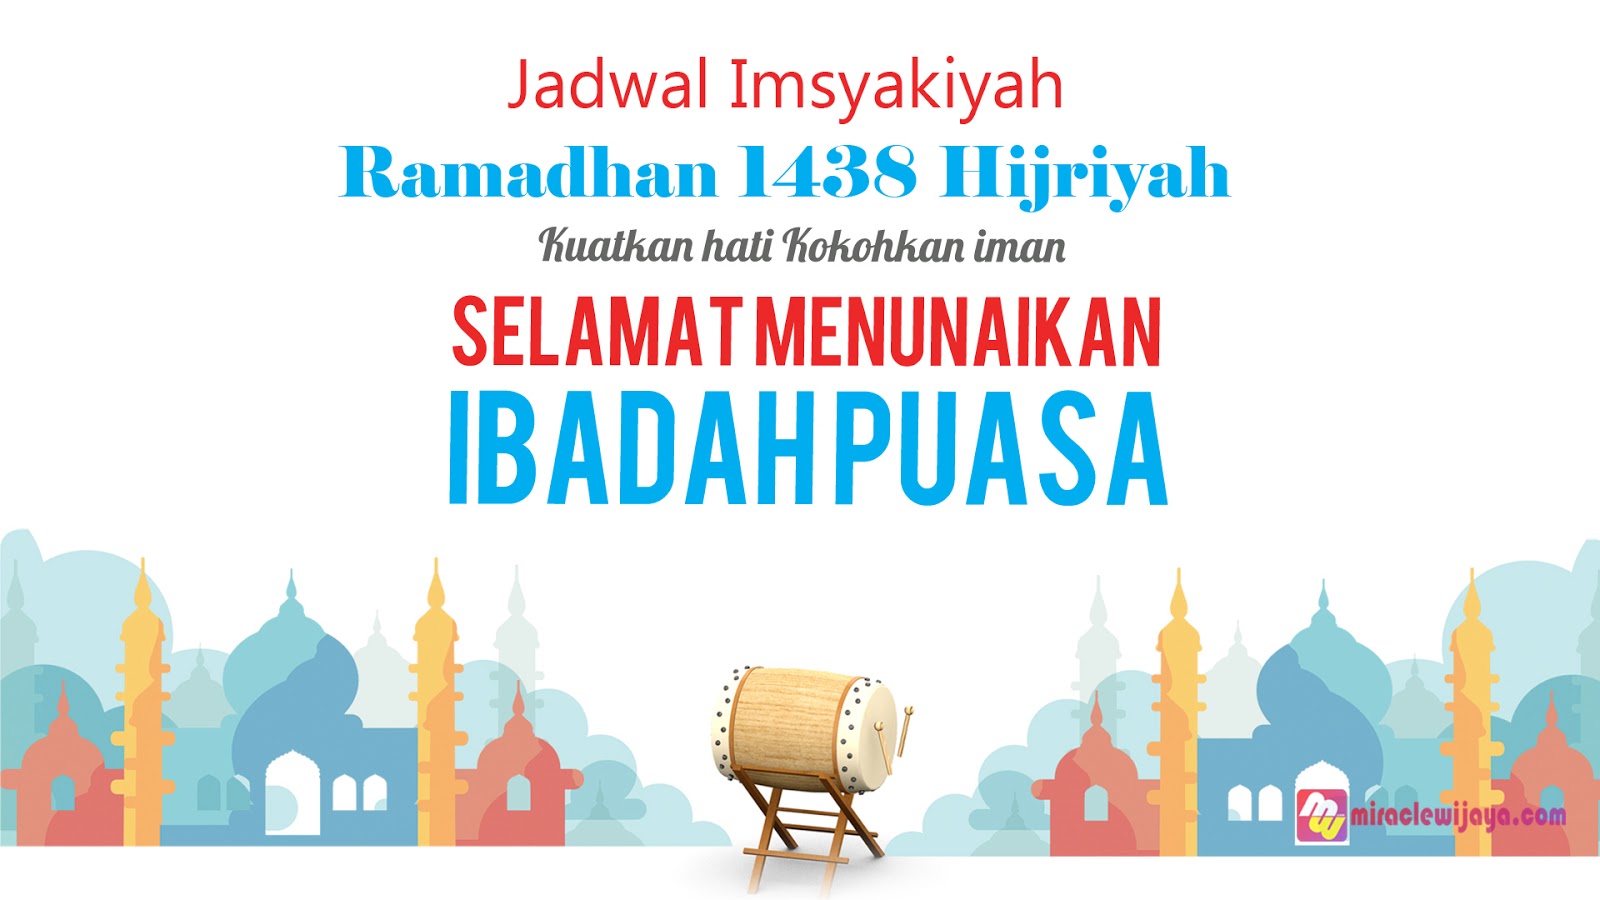 Jadwal Imsakiyah Ramadhan 2018-2019 (1440H 